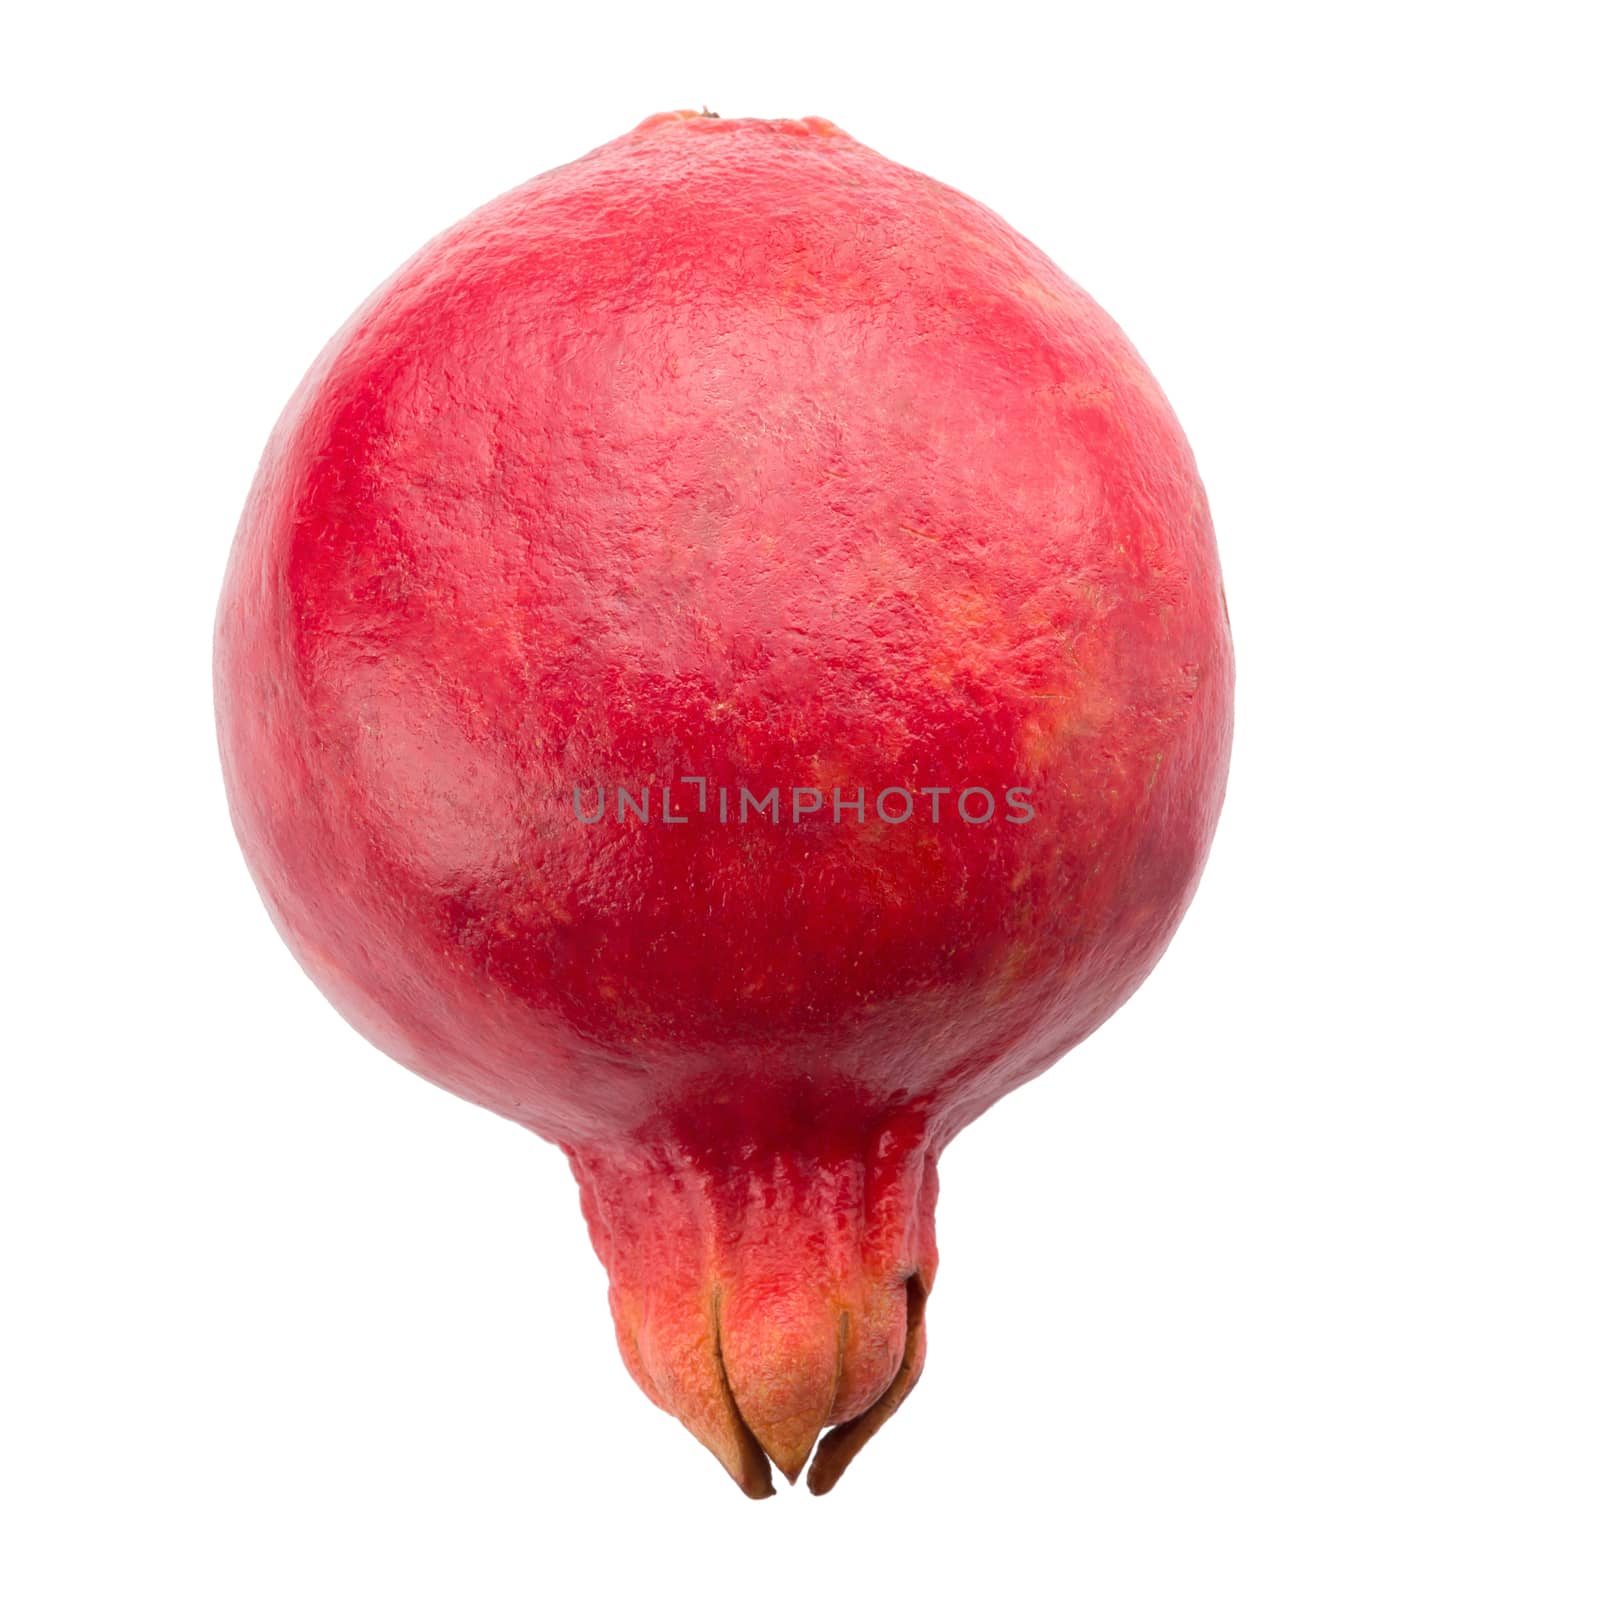 Ripe pomegranate fruit isolated on white background.